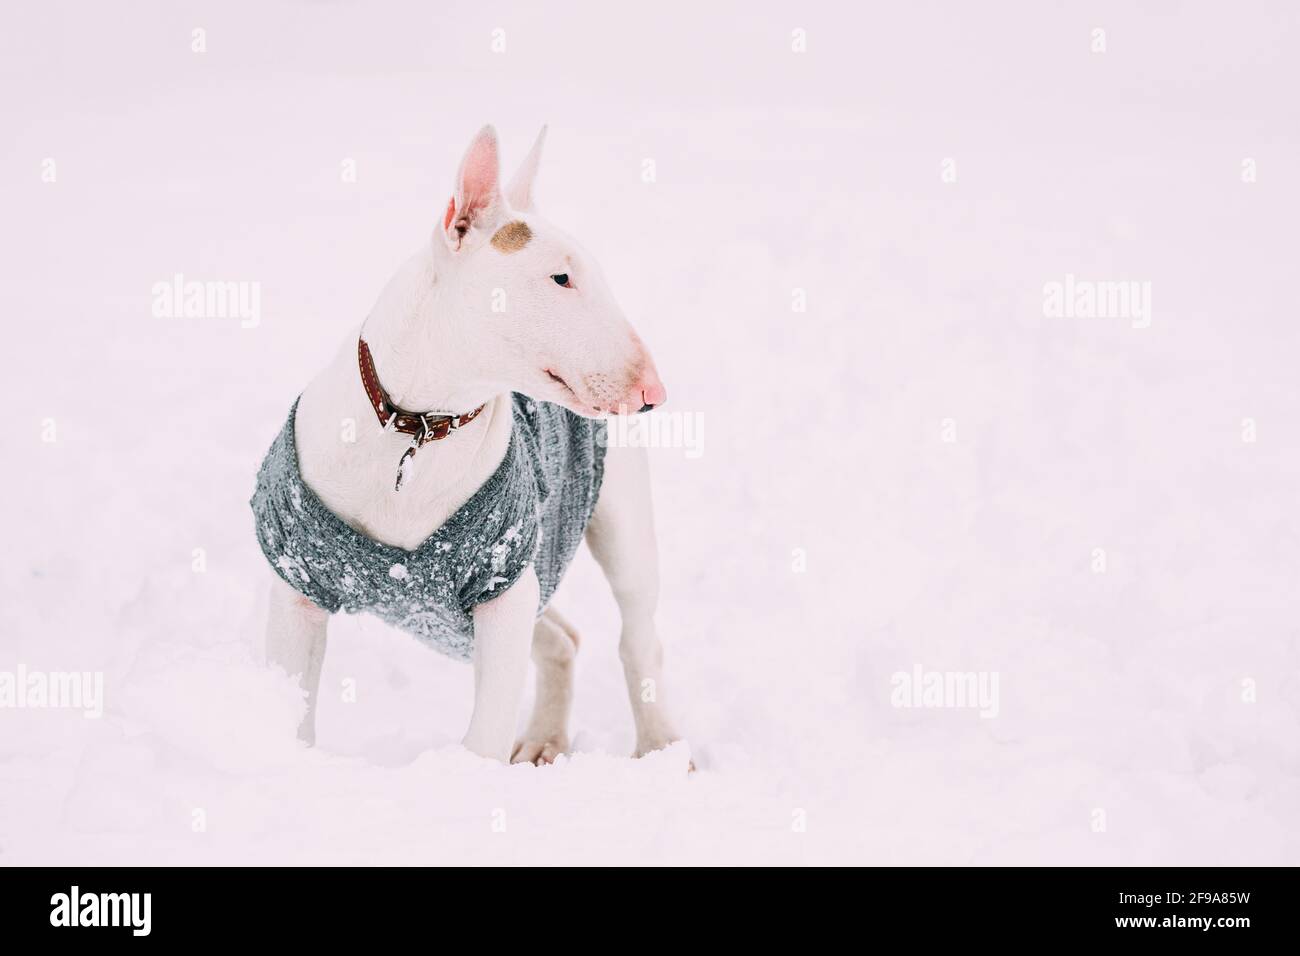 Lustige Junge Englische Bull Terrier Bullterrier Welpen Hund Posiert Im Freien In Schnee Schneeverwehung. Wintersaison. Verspielte Haustiere Im Freien Stockfoto